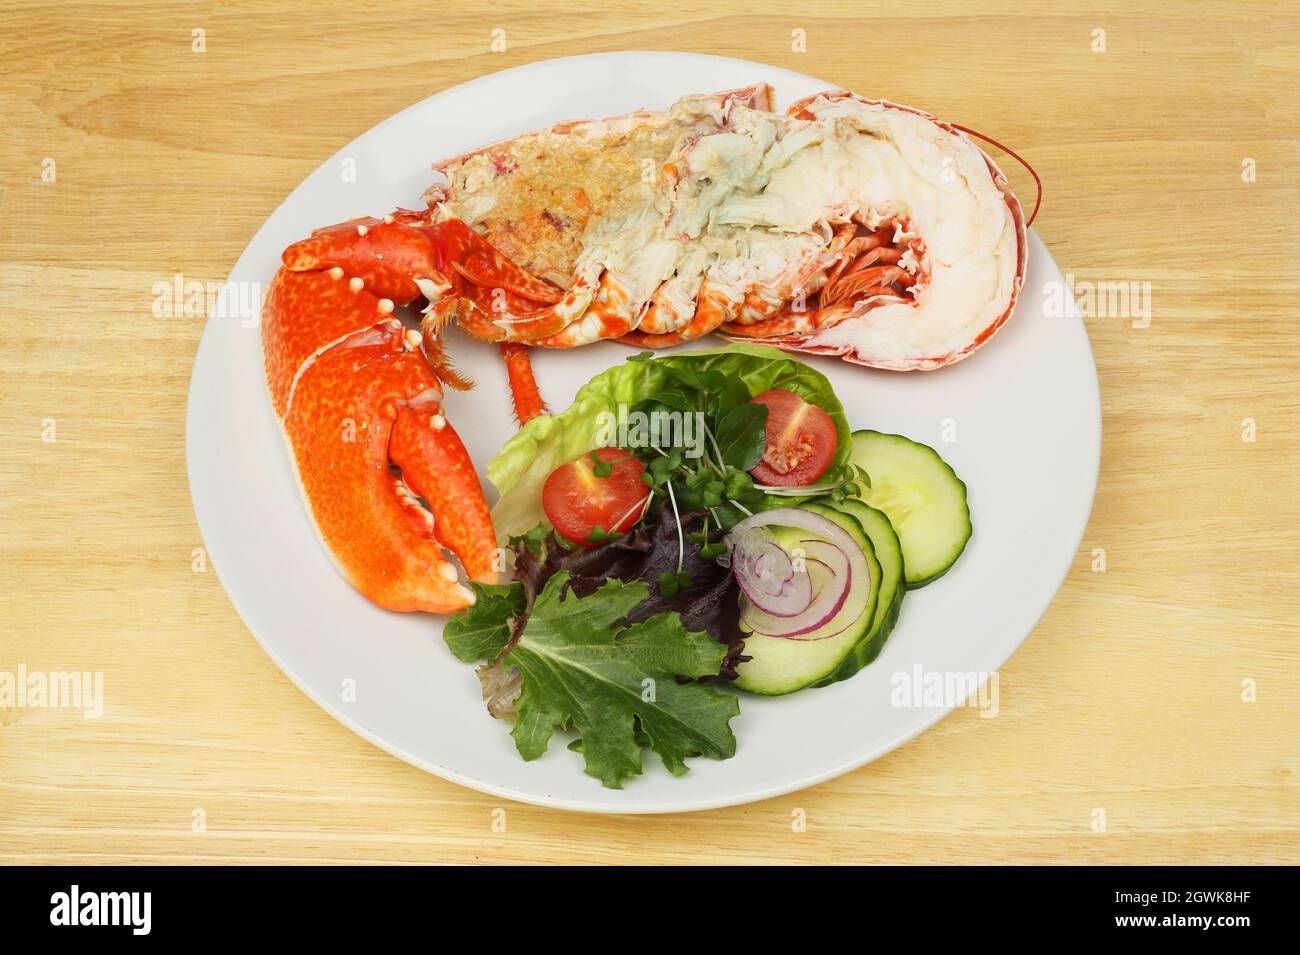 Demi-homard avec salade sur une assiette sur une table en bois Photo Stock  - Alamy